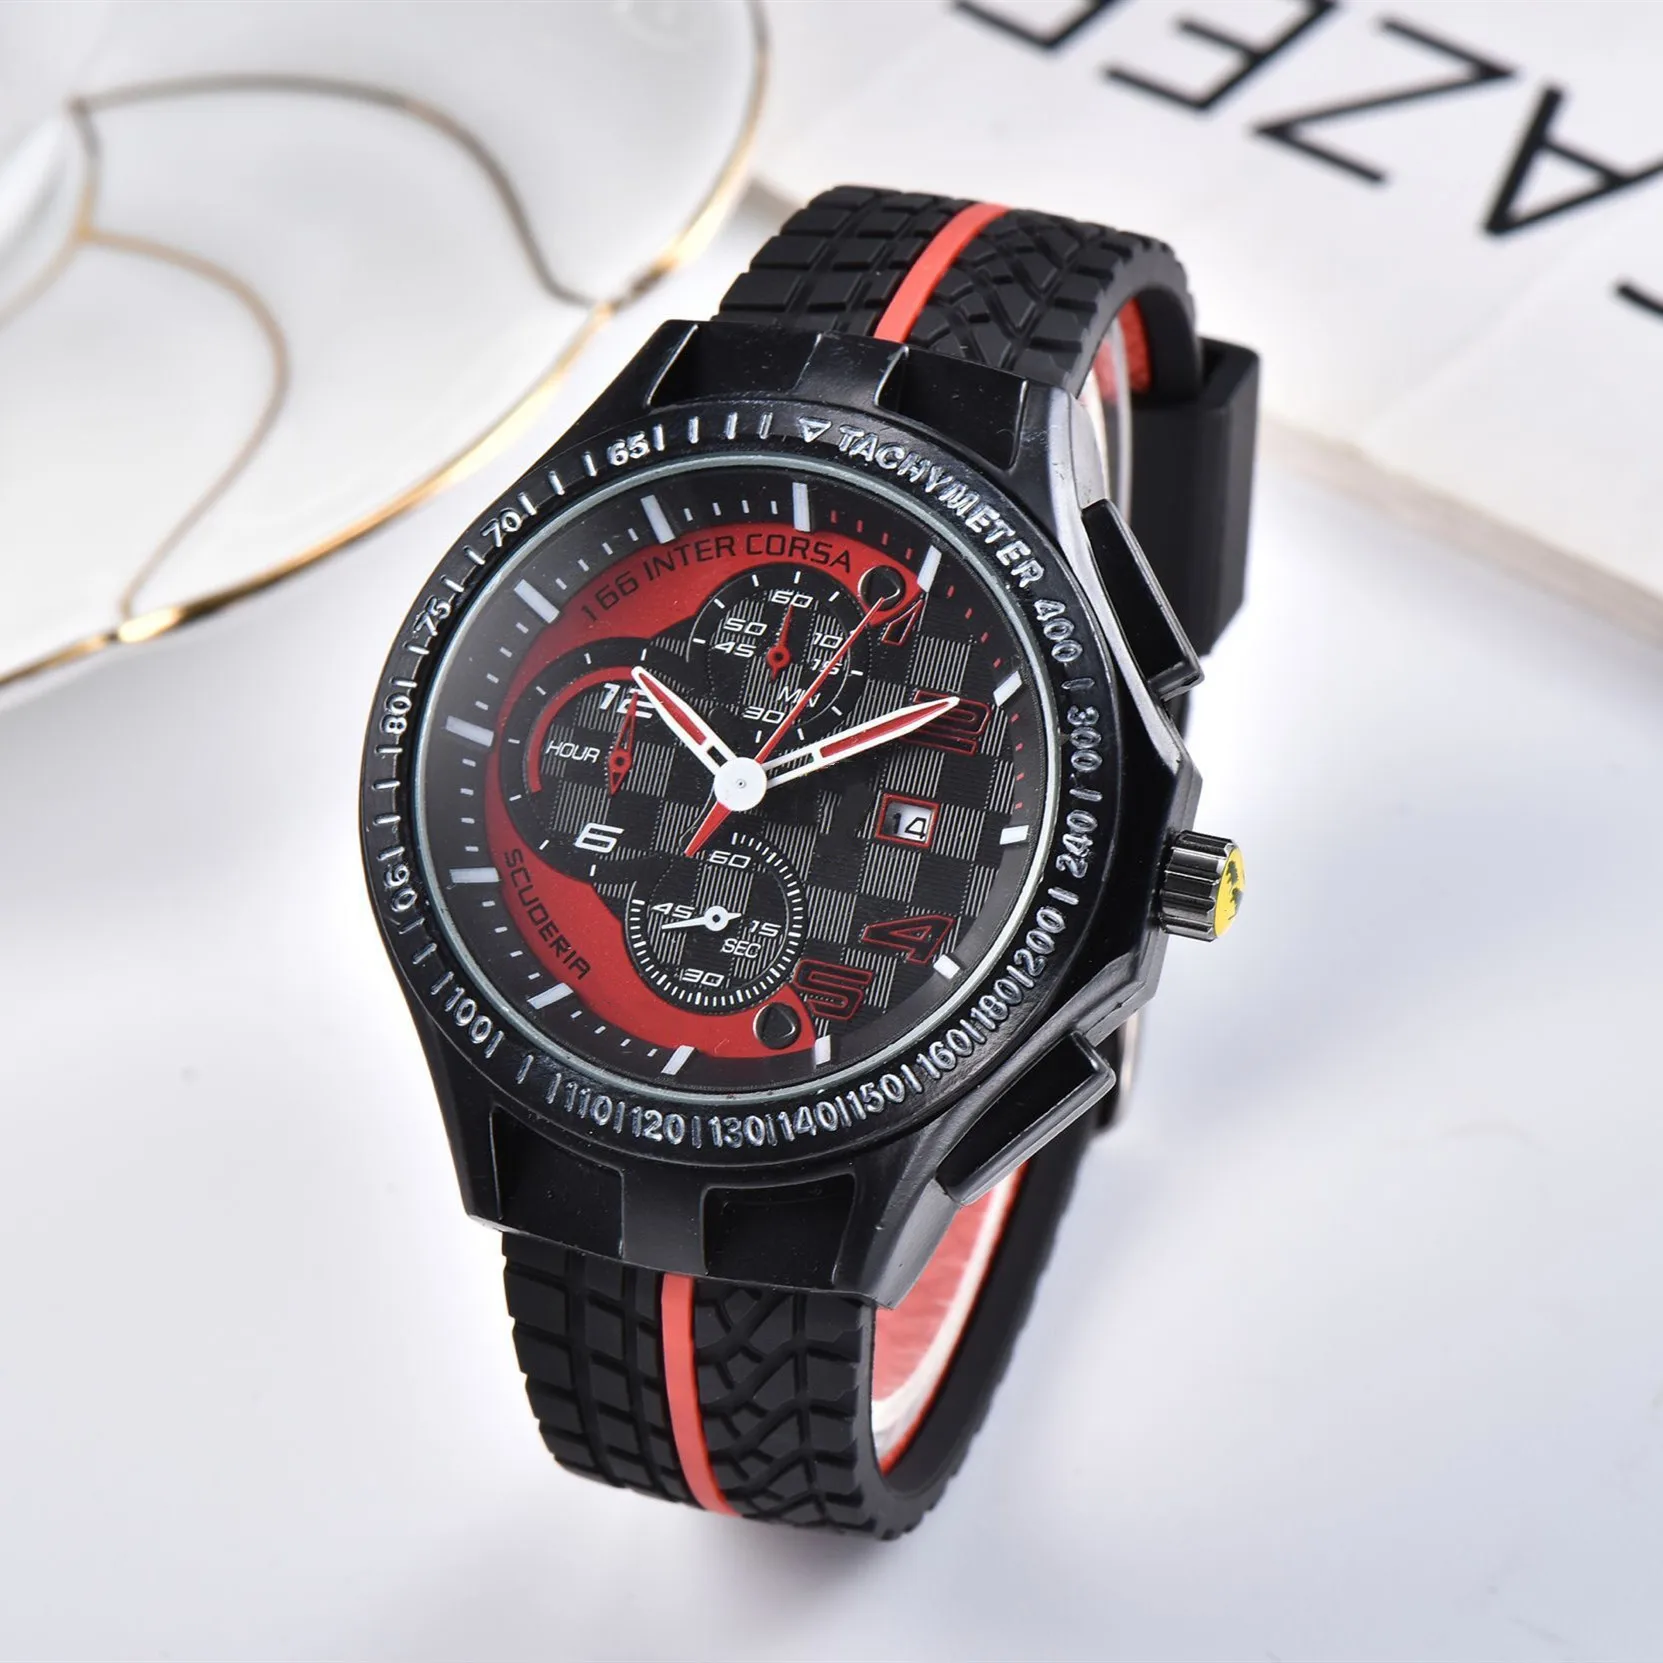 Luxus Sport Racing auto F1 Formel Gummi Uhr Strap edelstahl Quarz Uhren für Männer Uhr Beiläufige Armbanduhr Uhr